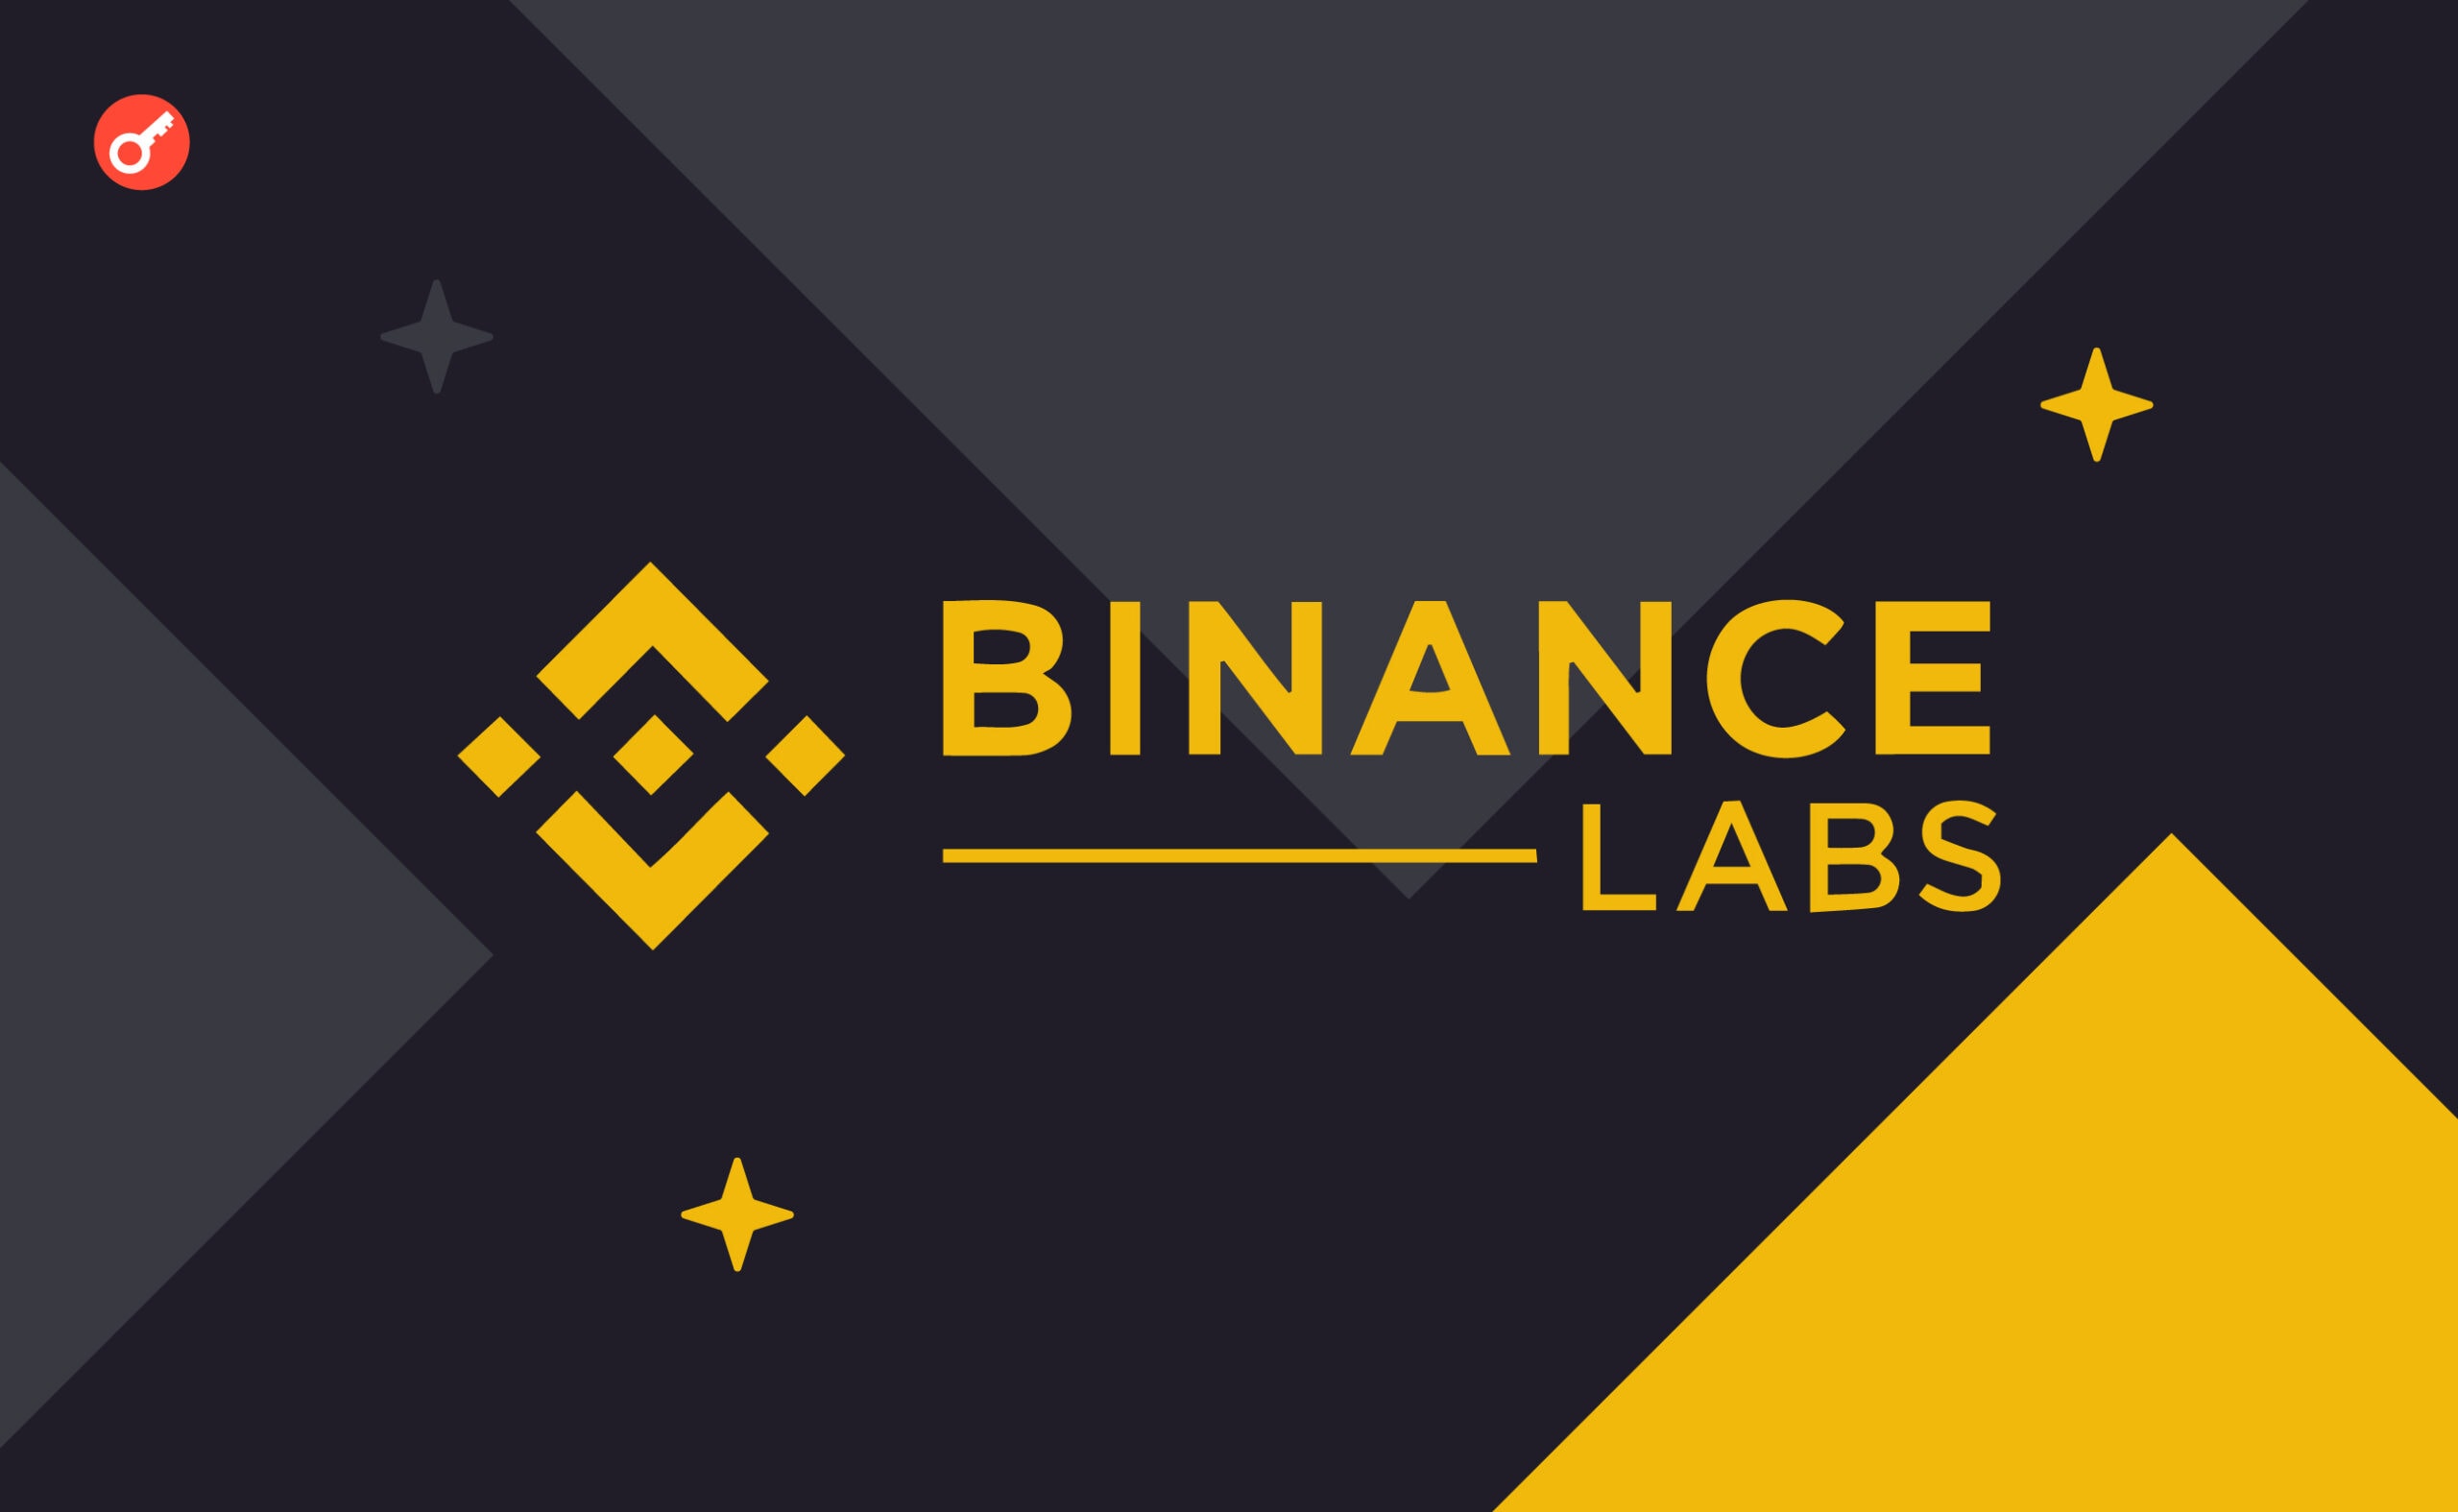 Binance Labs инвестировала в 7 проектов в рамках инкубационной программы. Заглавный коллаж новости.